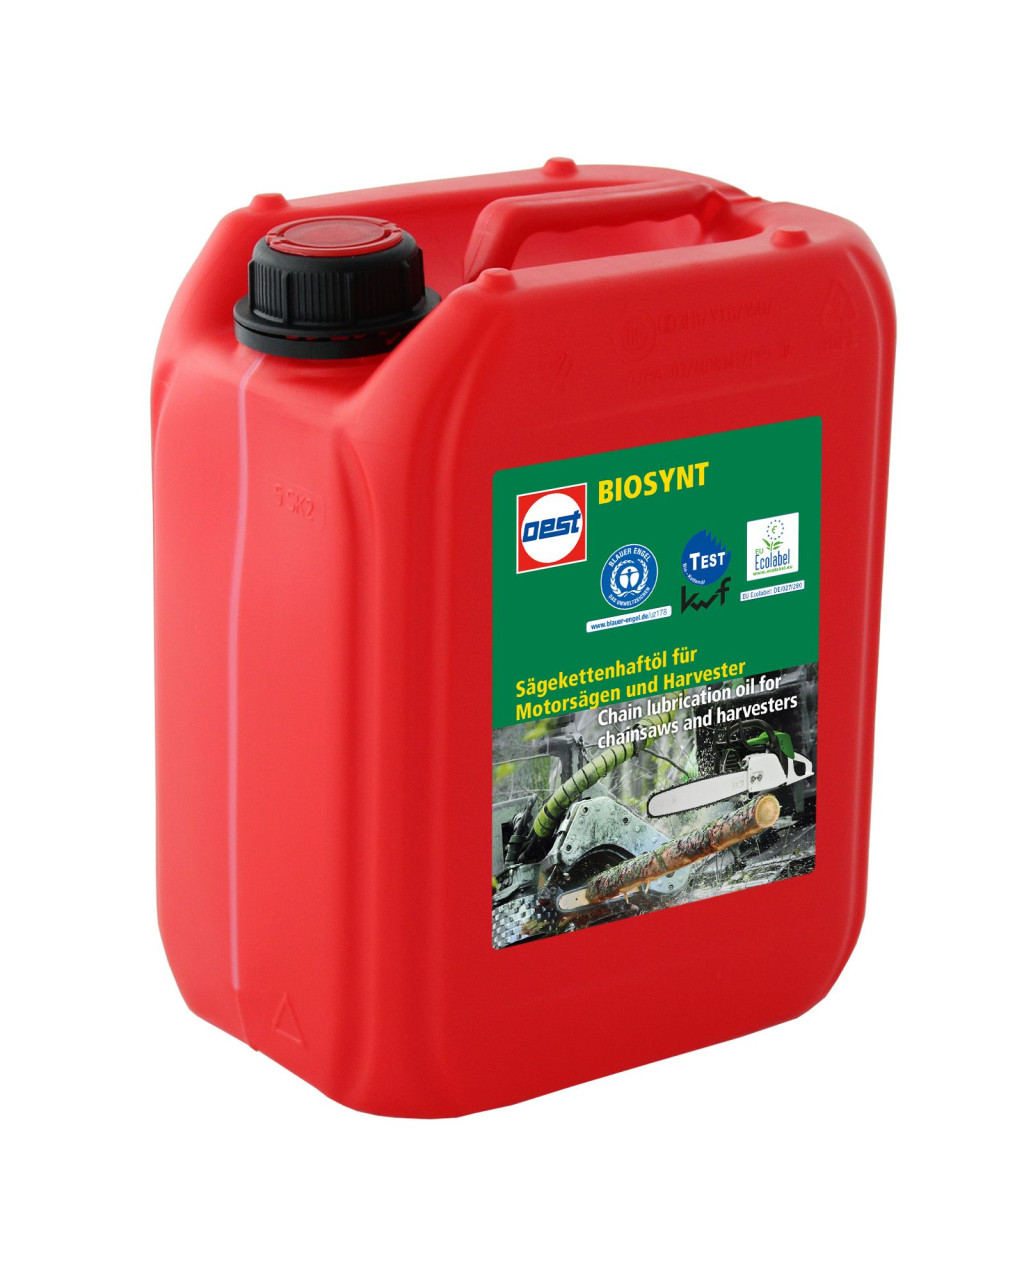 Oest Biosynt Sägekettenhaftöl für Motorsägen und Harvestern im 4 x 5lt/Kanister